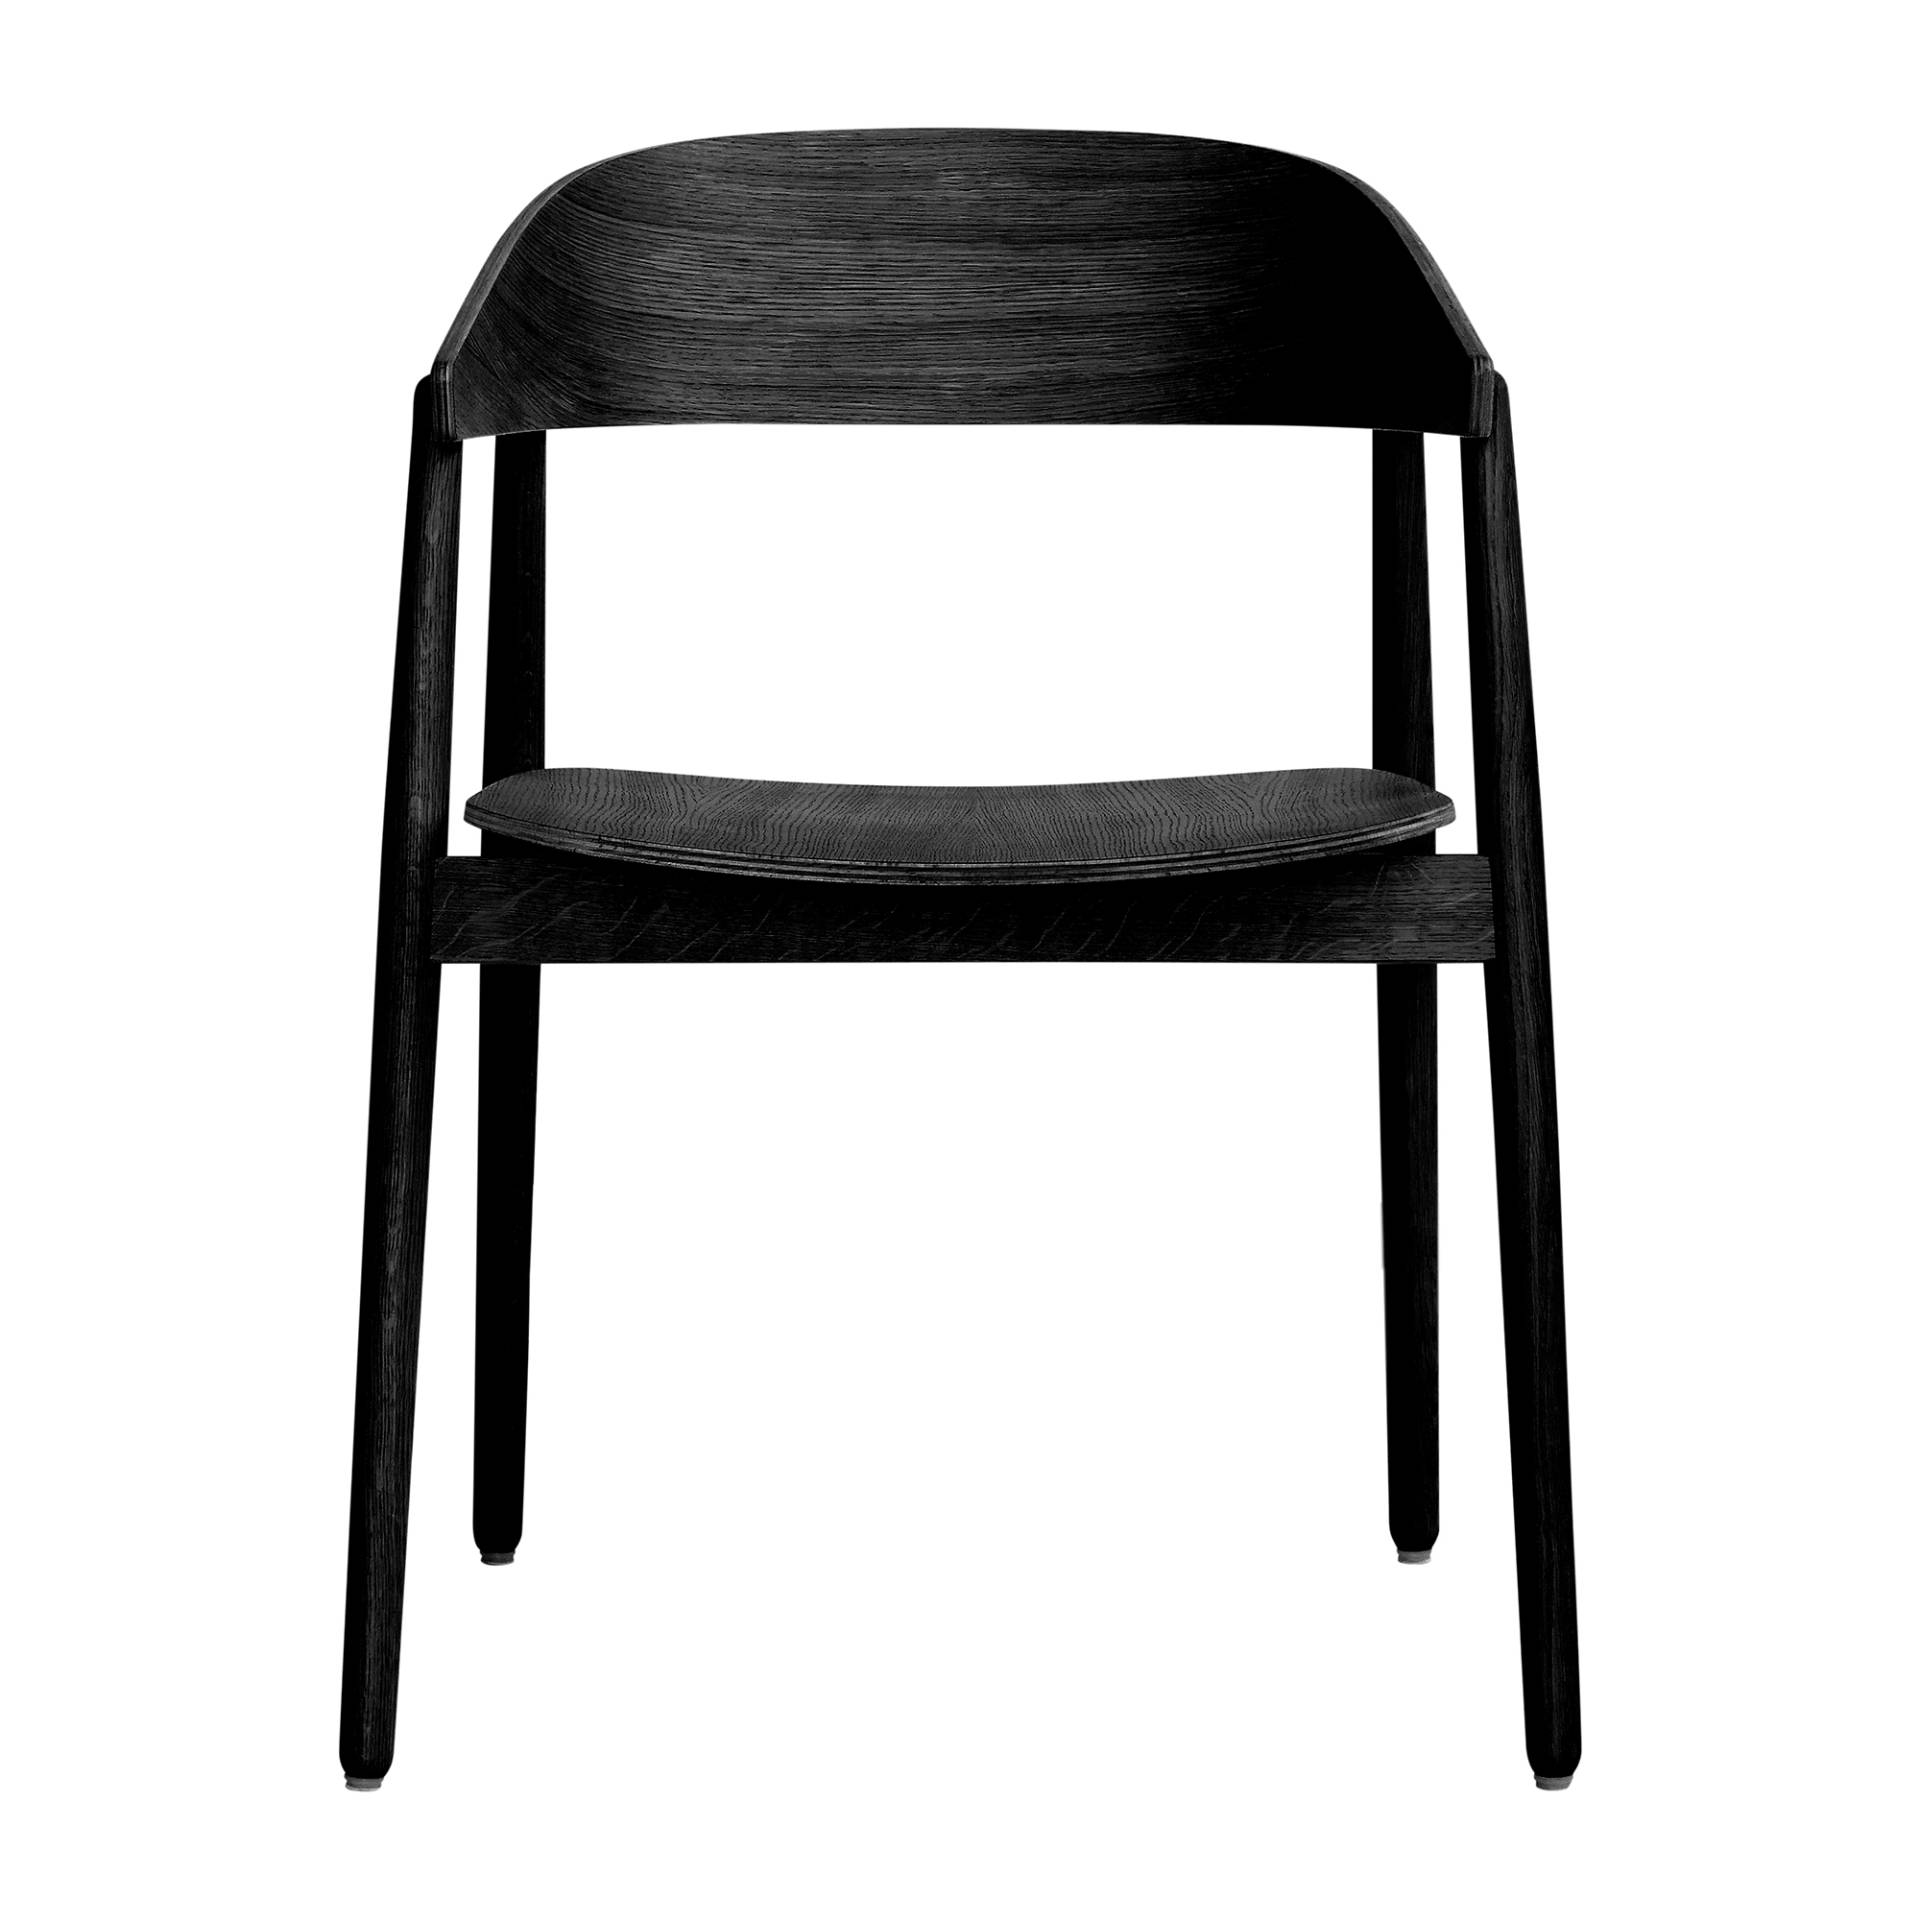 Andersen Furniture - AC2 Armlehnstuhl - eiche schwarz/lackiert/BxHxT 58x74x53cm von Andersen Furniture